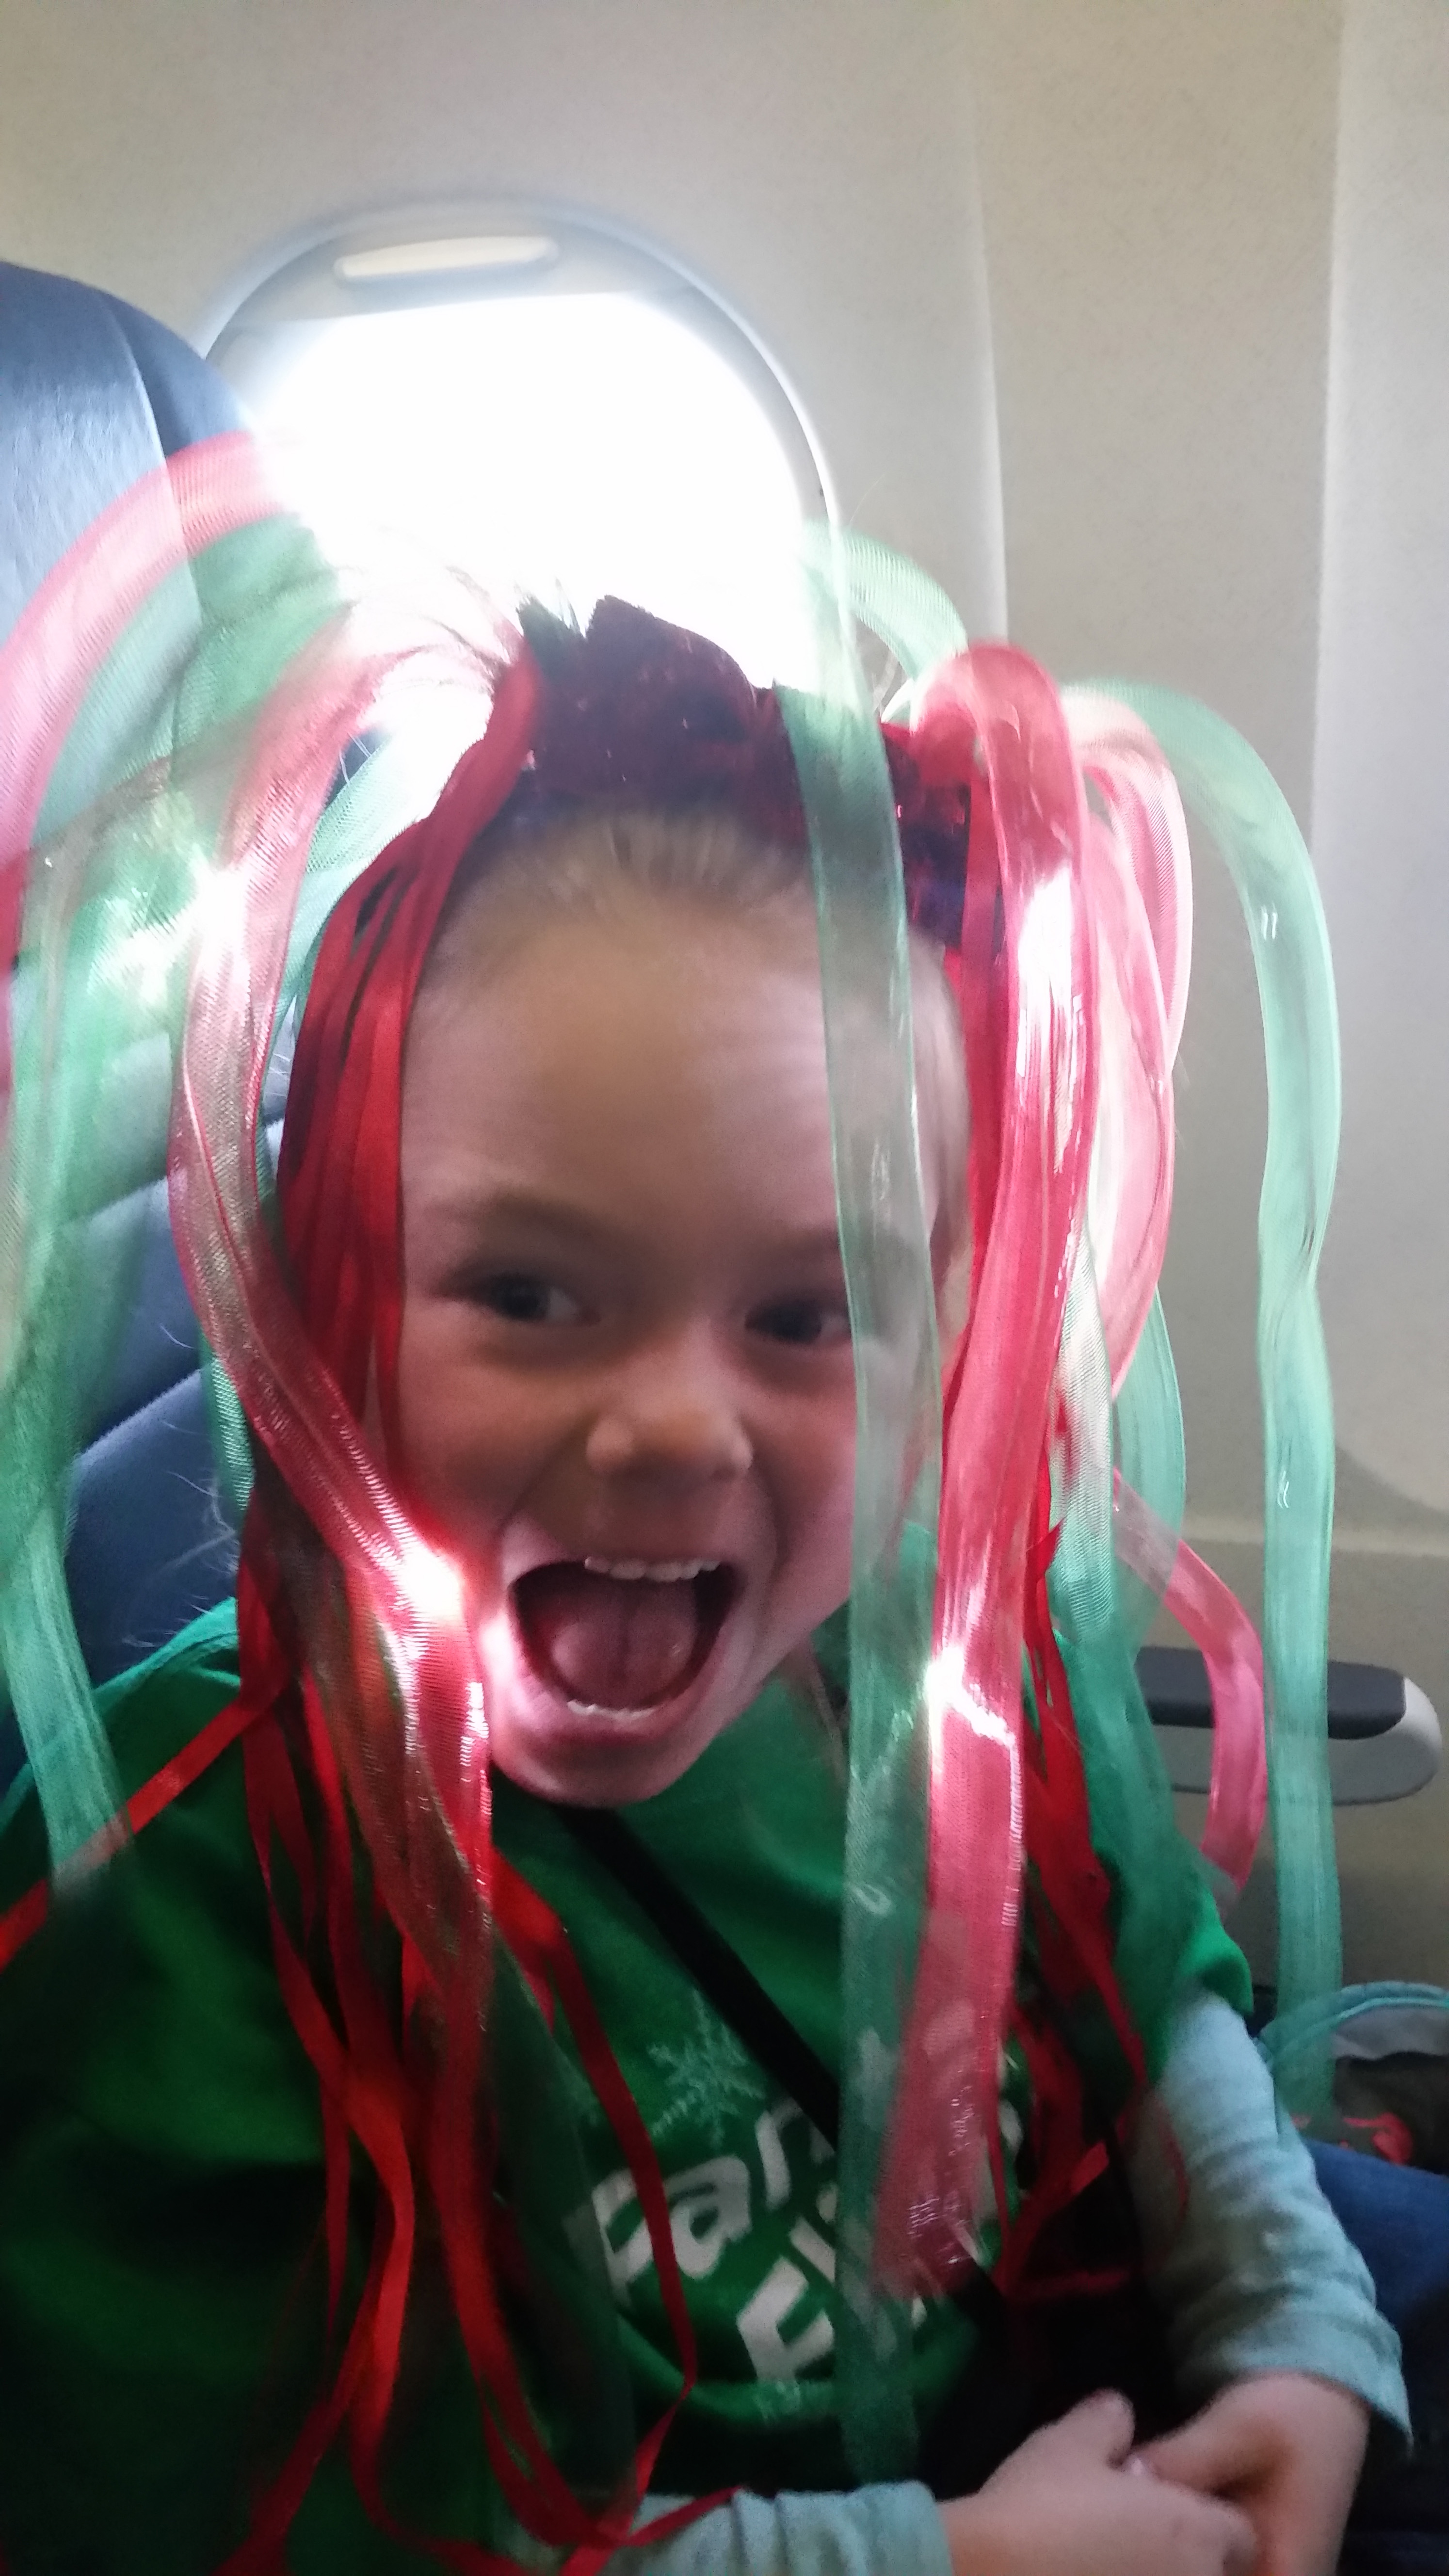 A little girl wears a glowing headband.